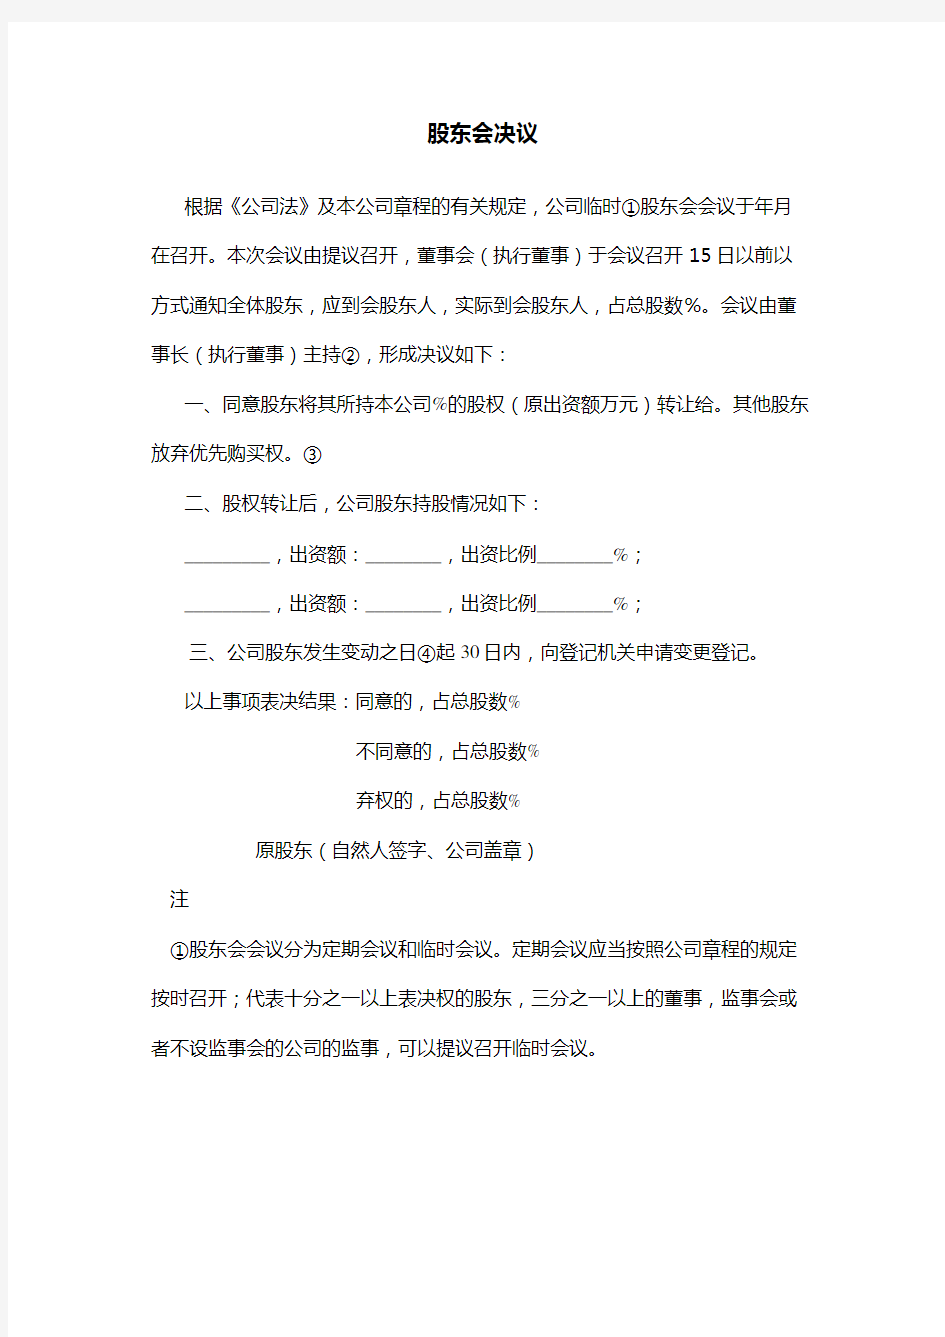 上海工商股权转让股东会决议